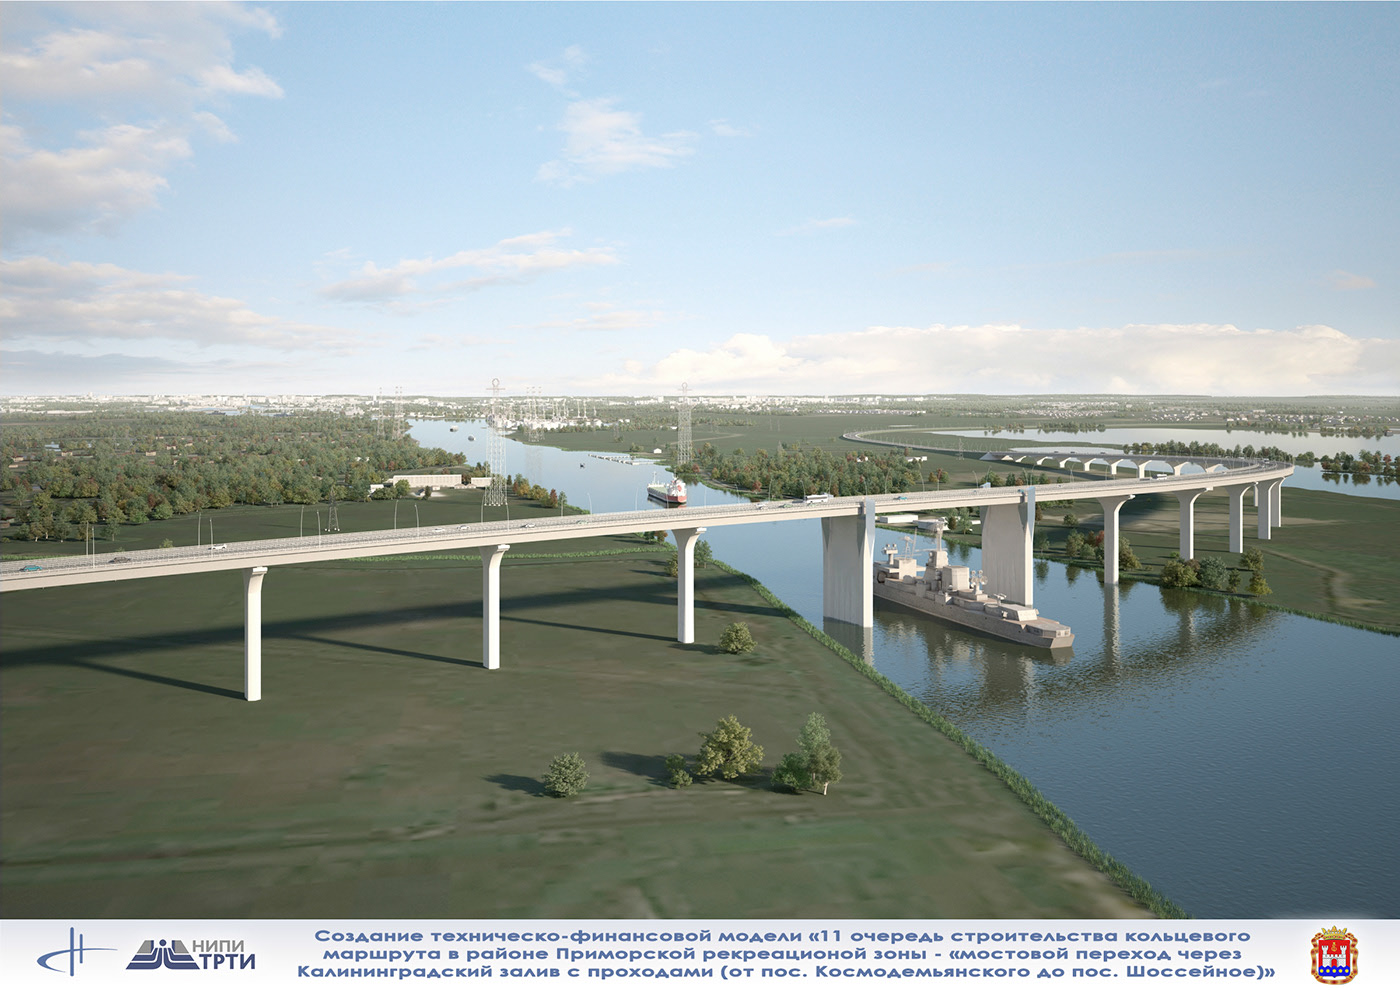 В том числе и Ростех будет строить моста под Калининградом стоимостью более 40 млрд рублей